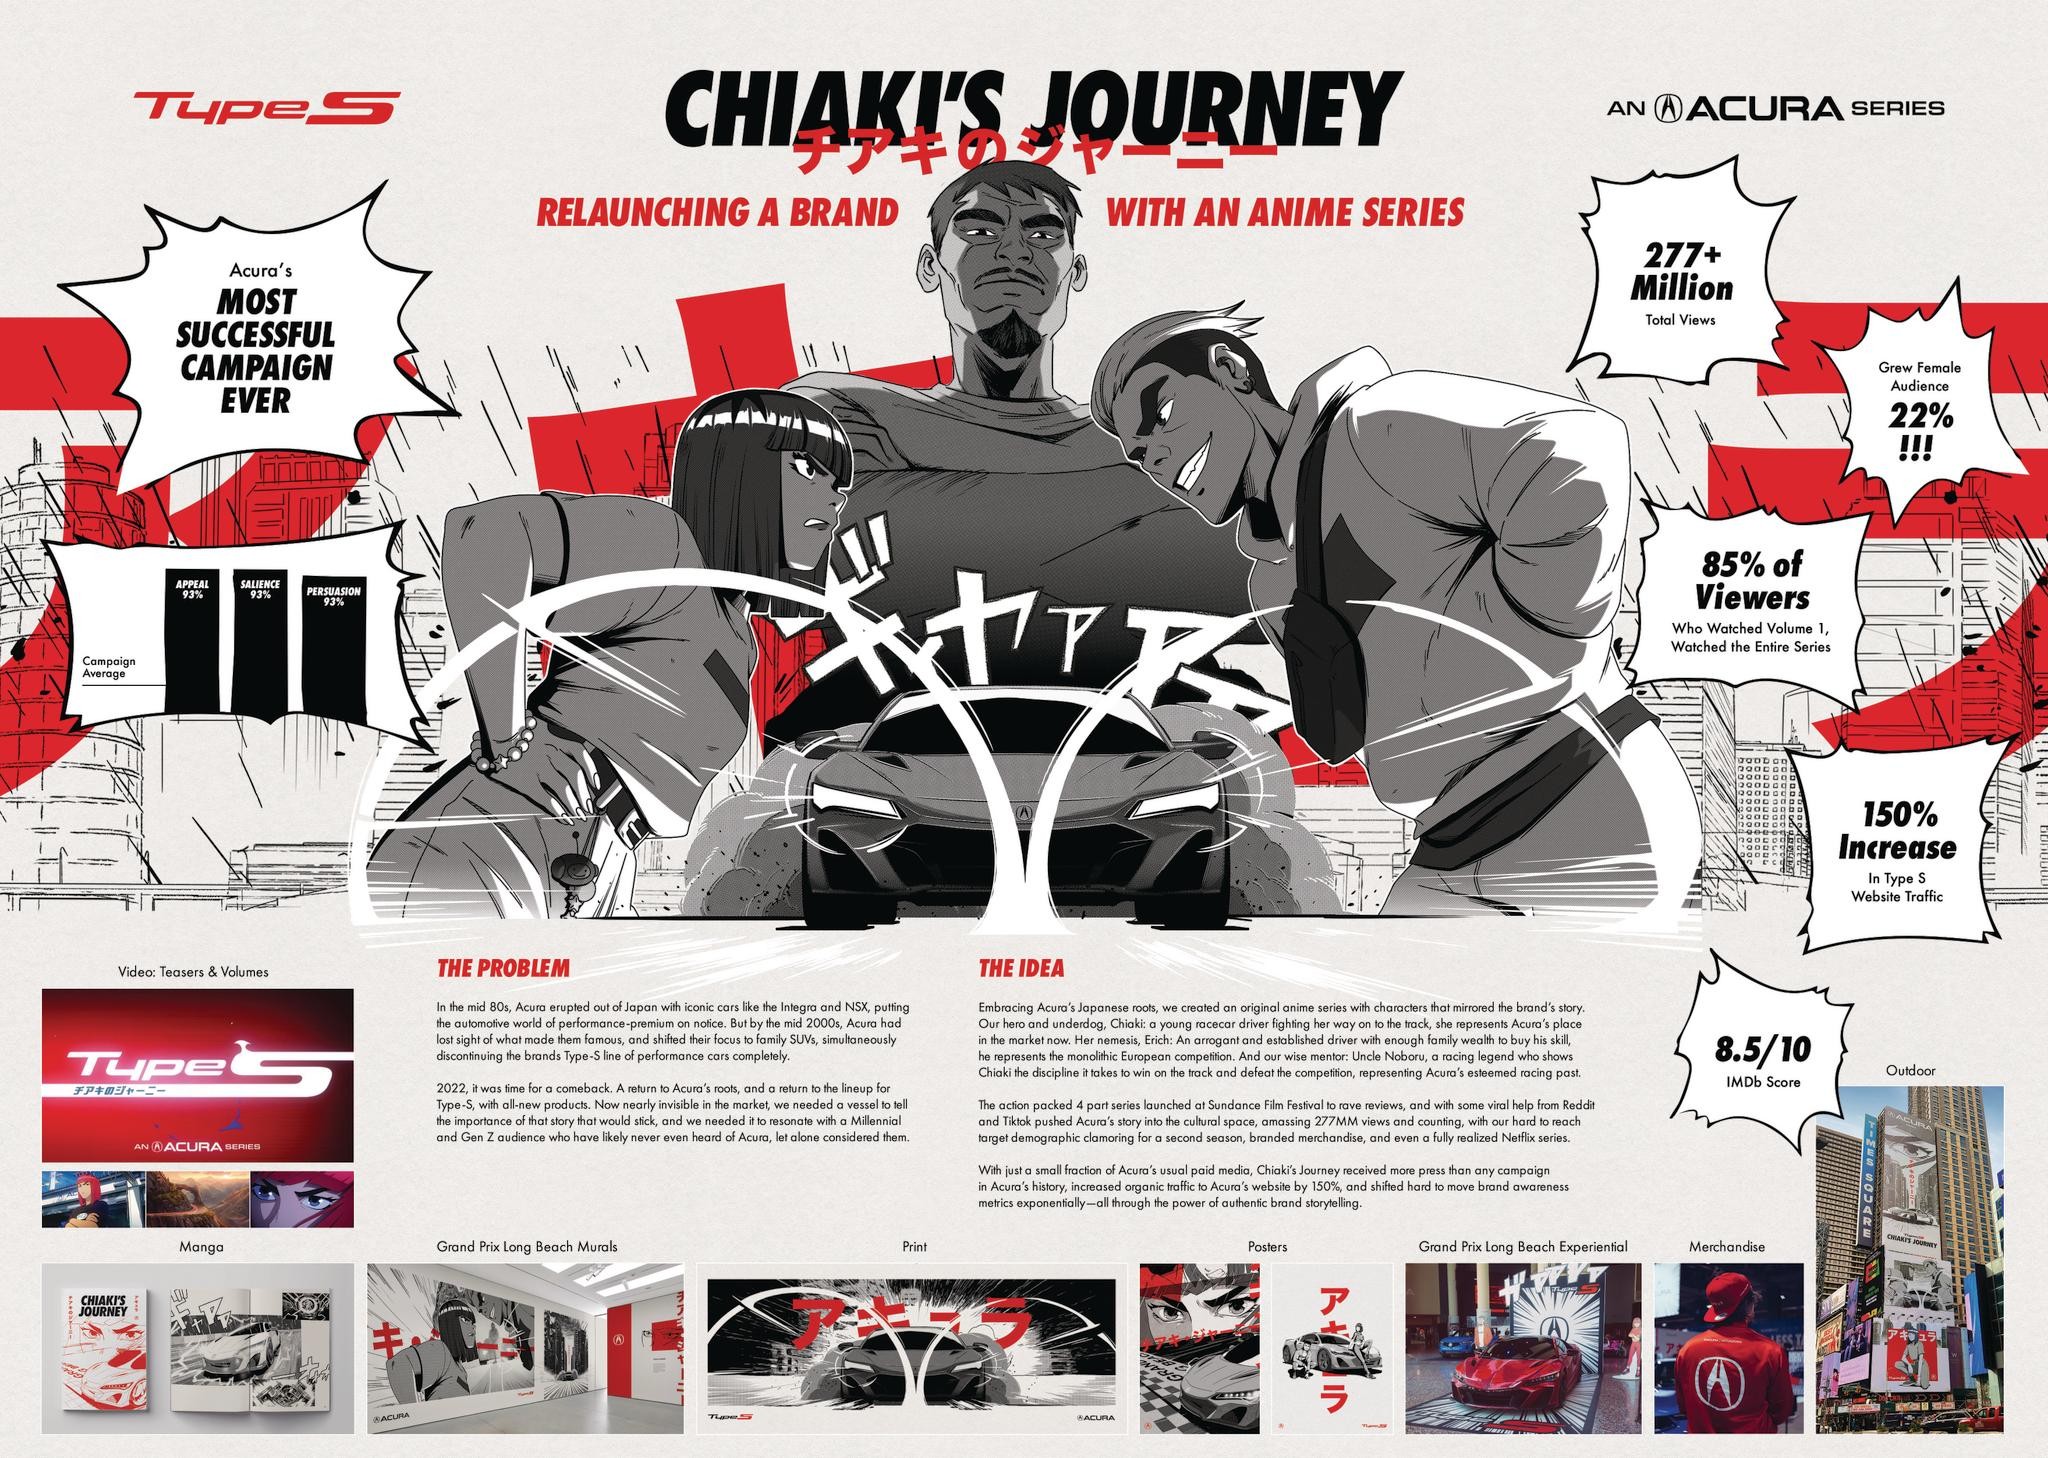 Chiaki's Journey